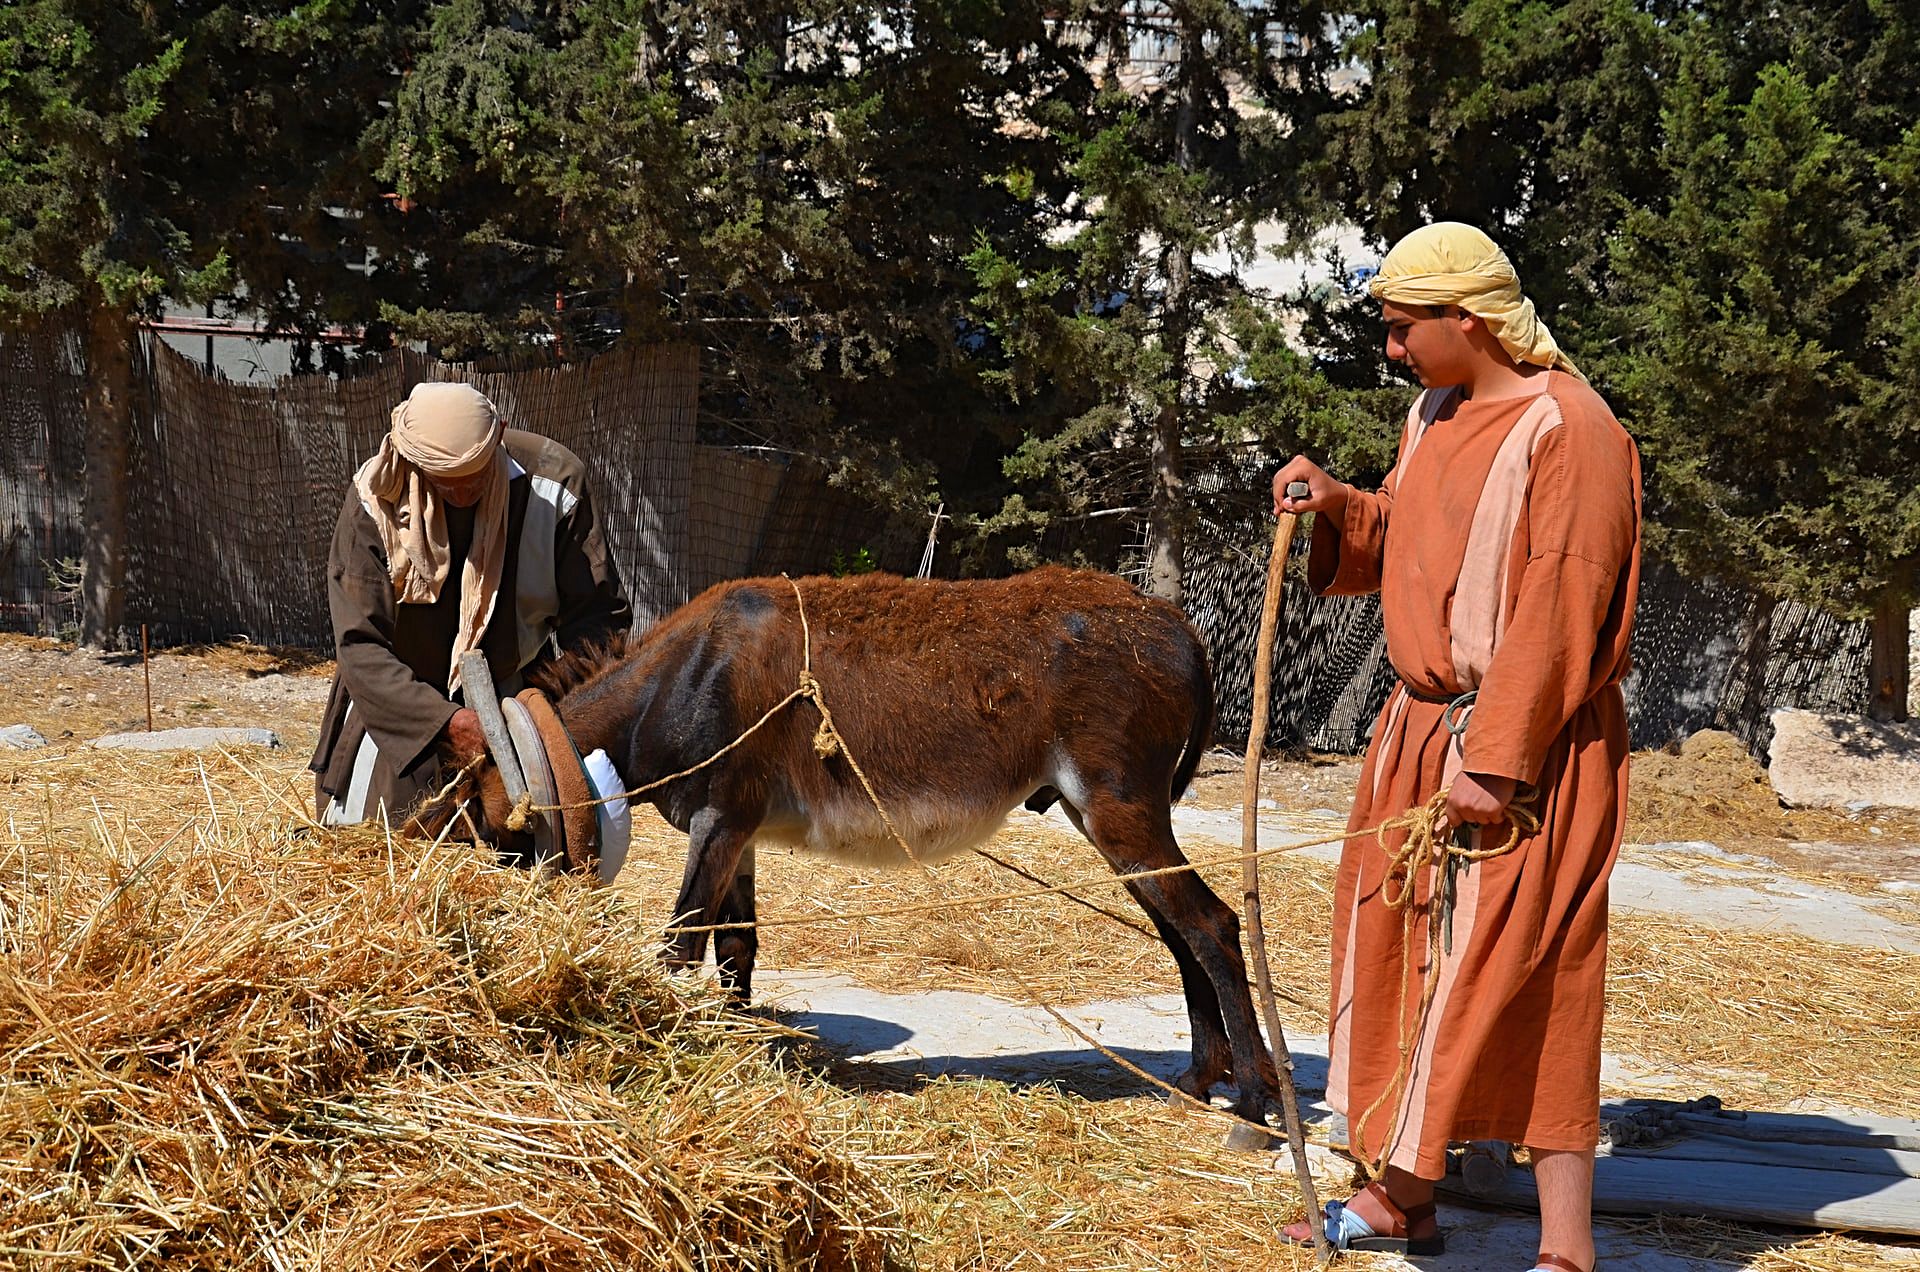 Donkey in Nazareth, Israel